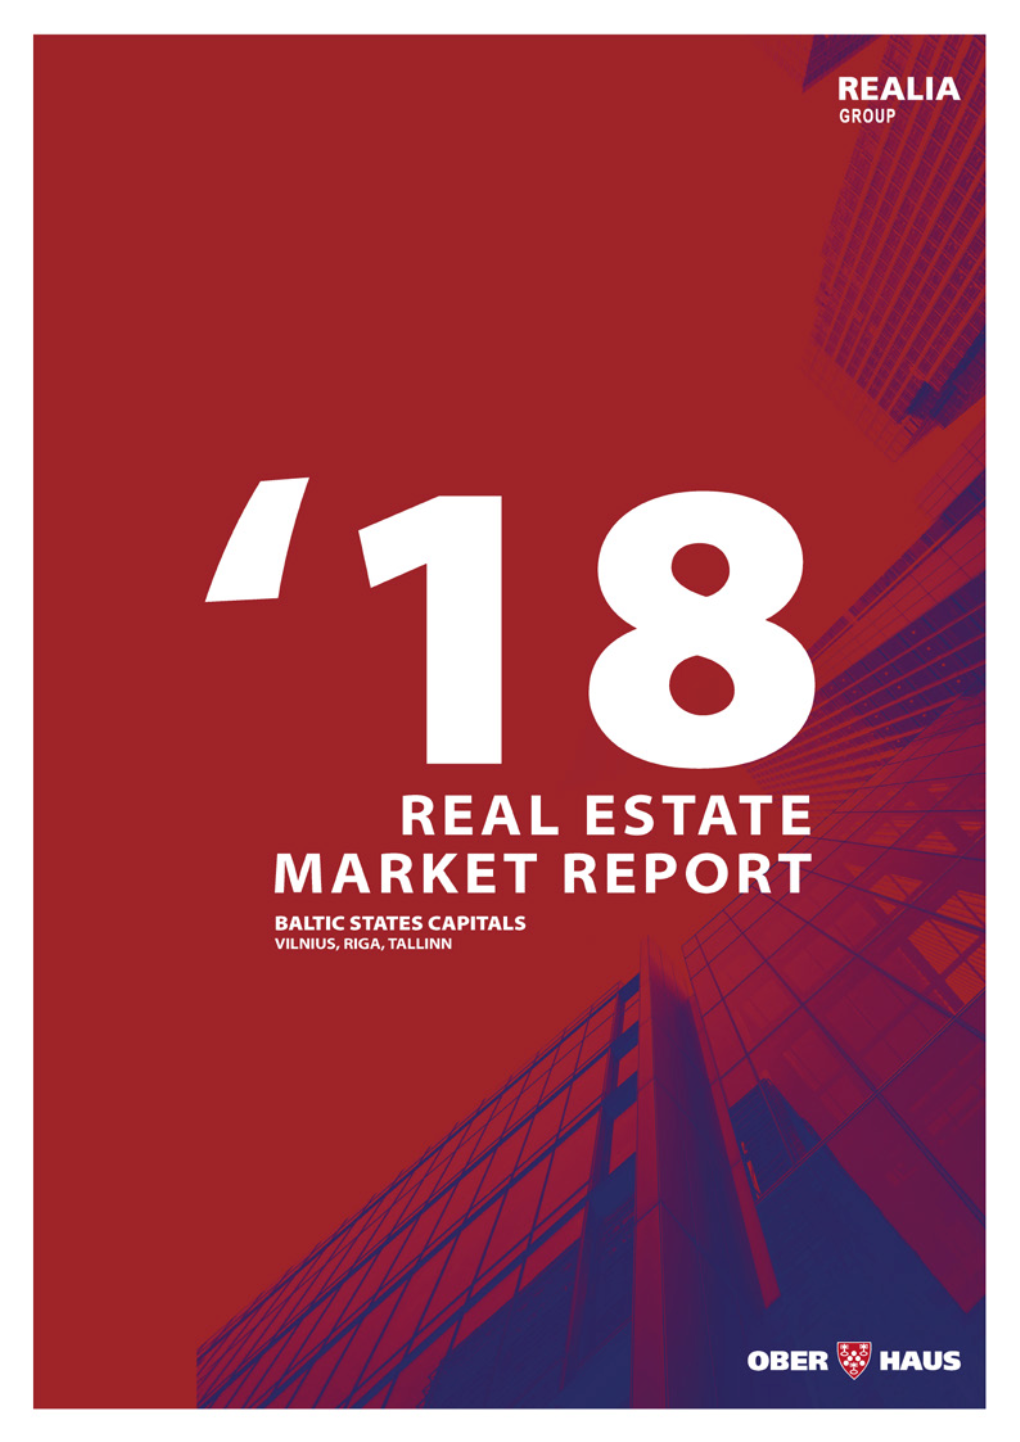 Baltics Real Estate Market Report 2018